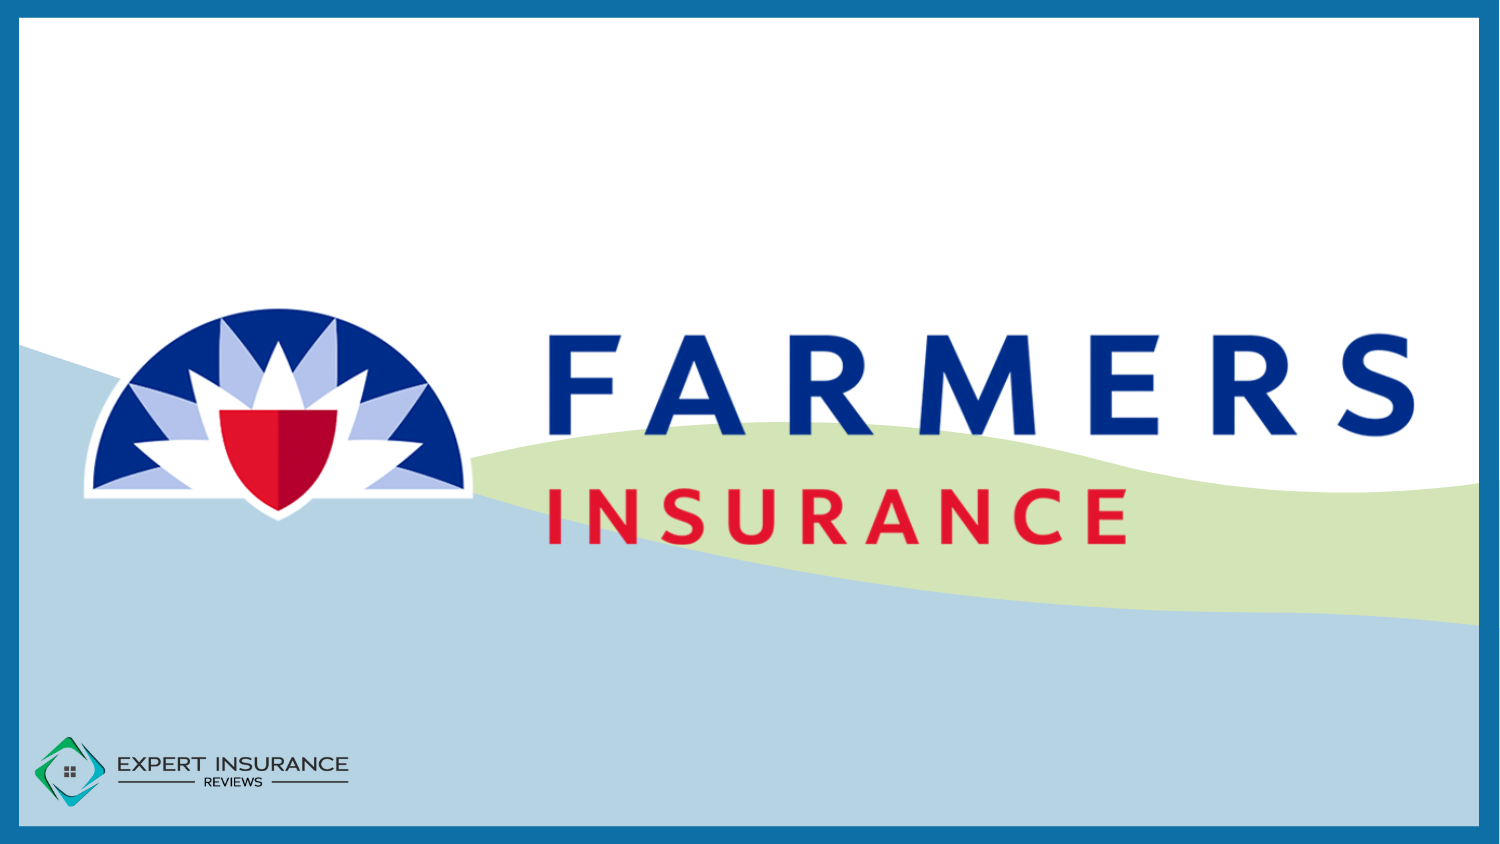 Farmers: 10 Best Car Insurance Companies for Acuras